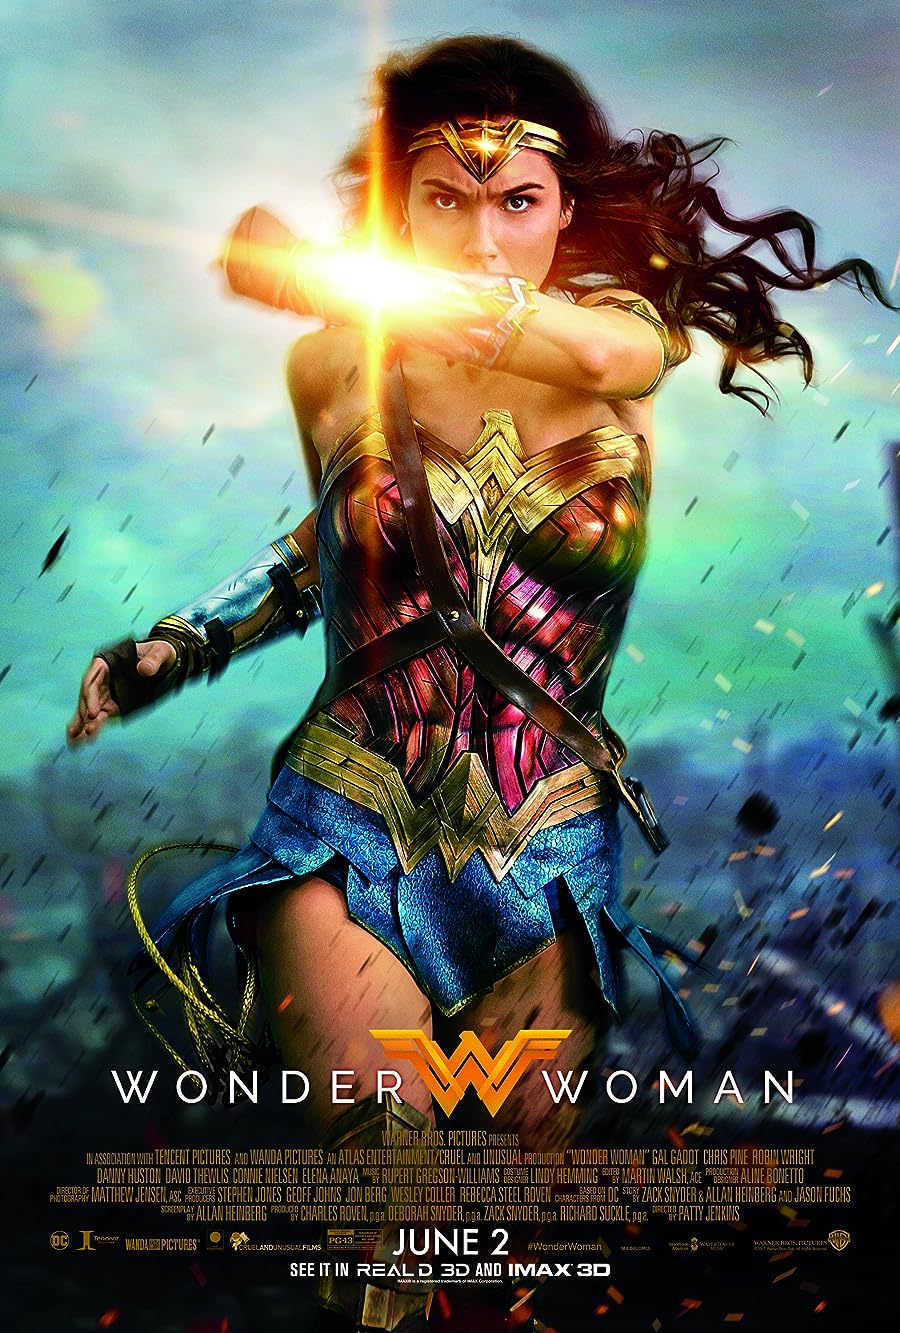 دانلود فیلم Wonder Woman 2017